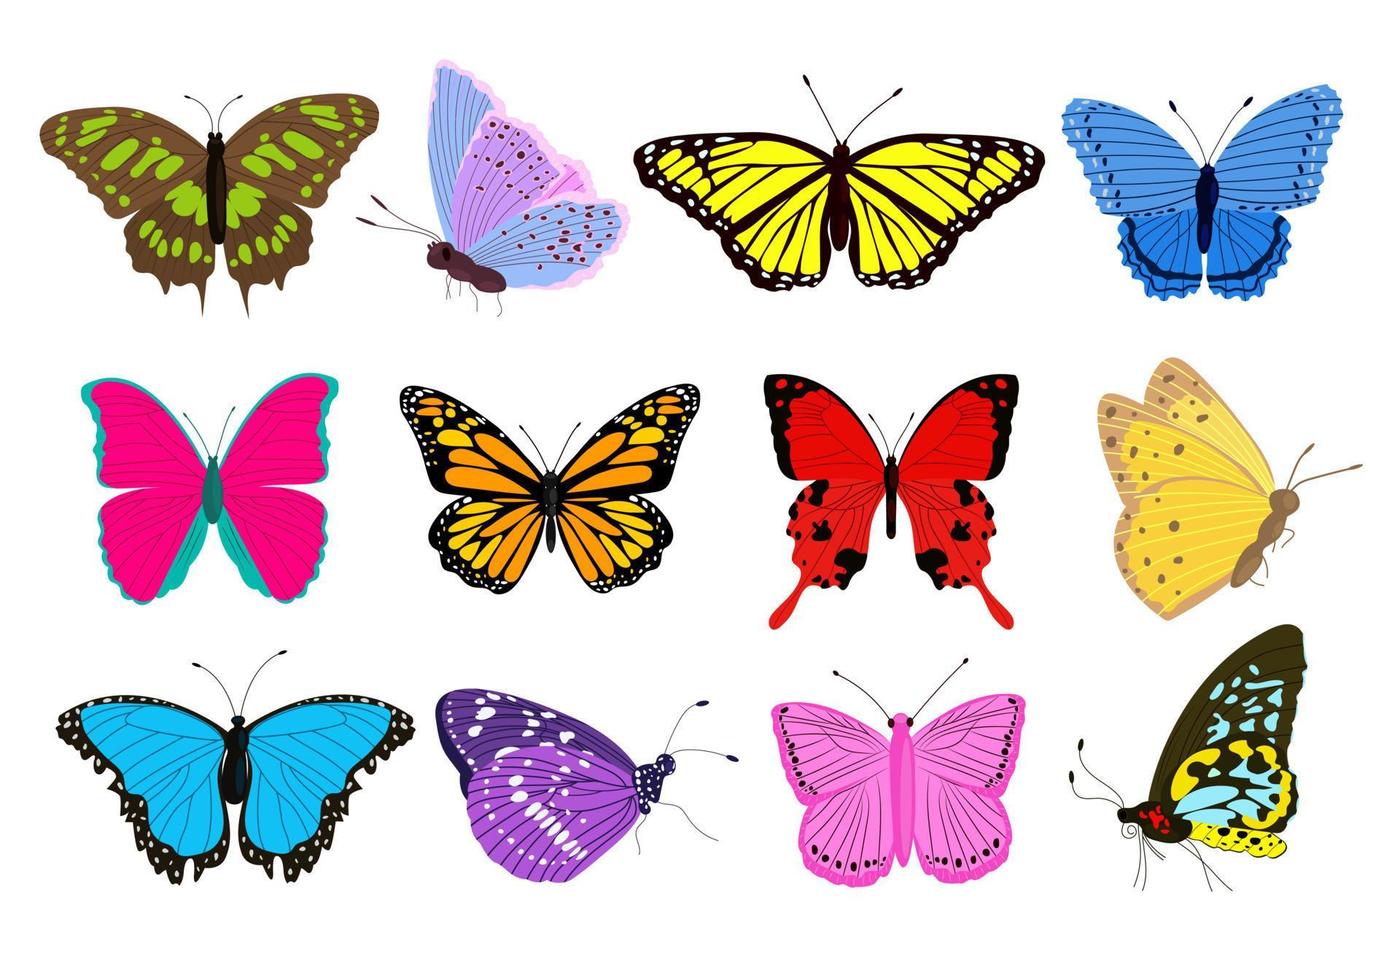 grande collection de papillons colorés de différentes formes et couleurs. insectes tropicaux exotiques. vecteur